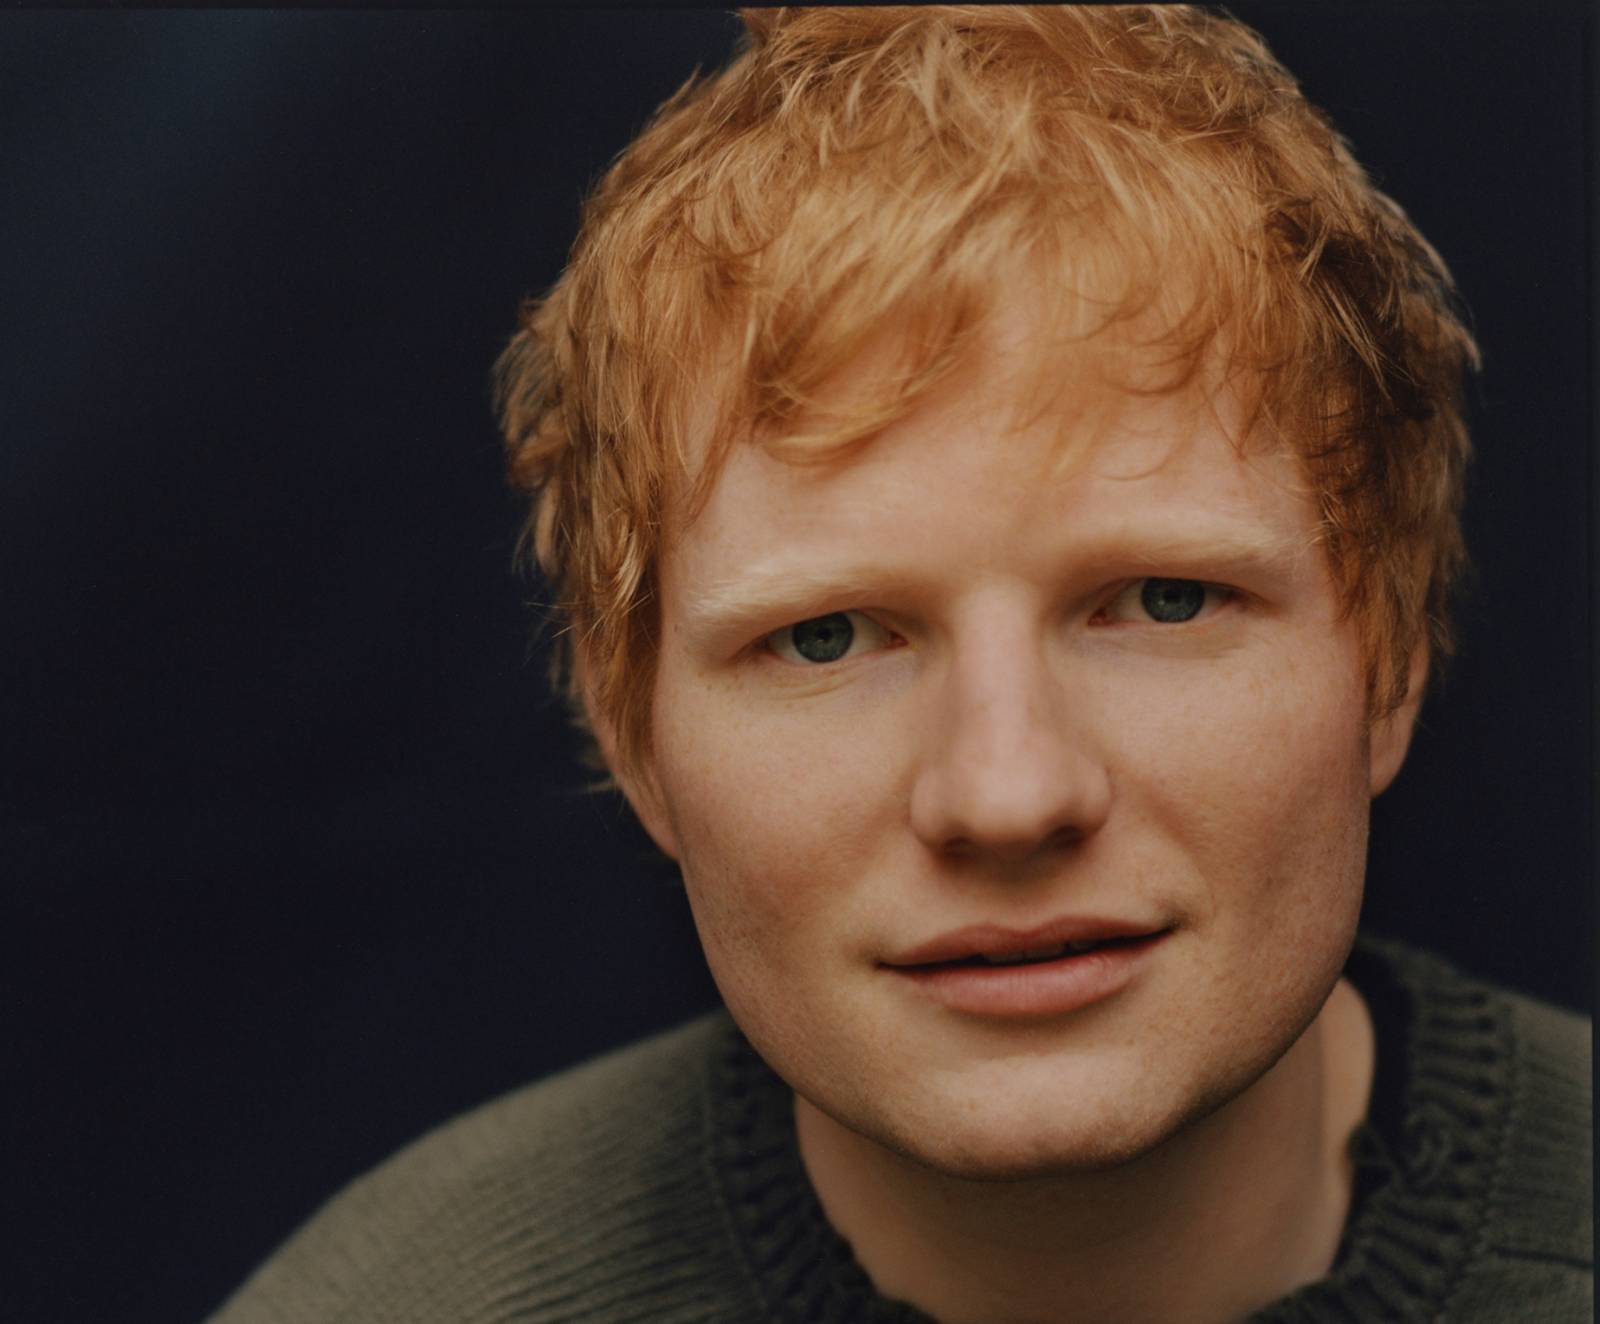 RECENZE: Nové album Eda Sheerana zavání komerčním kalkulem. Světlé momenty se rozplývají v mlze hustého klišé